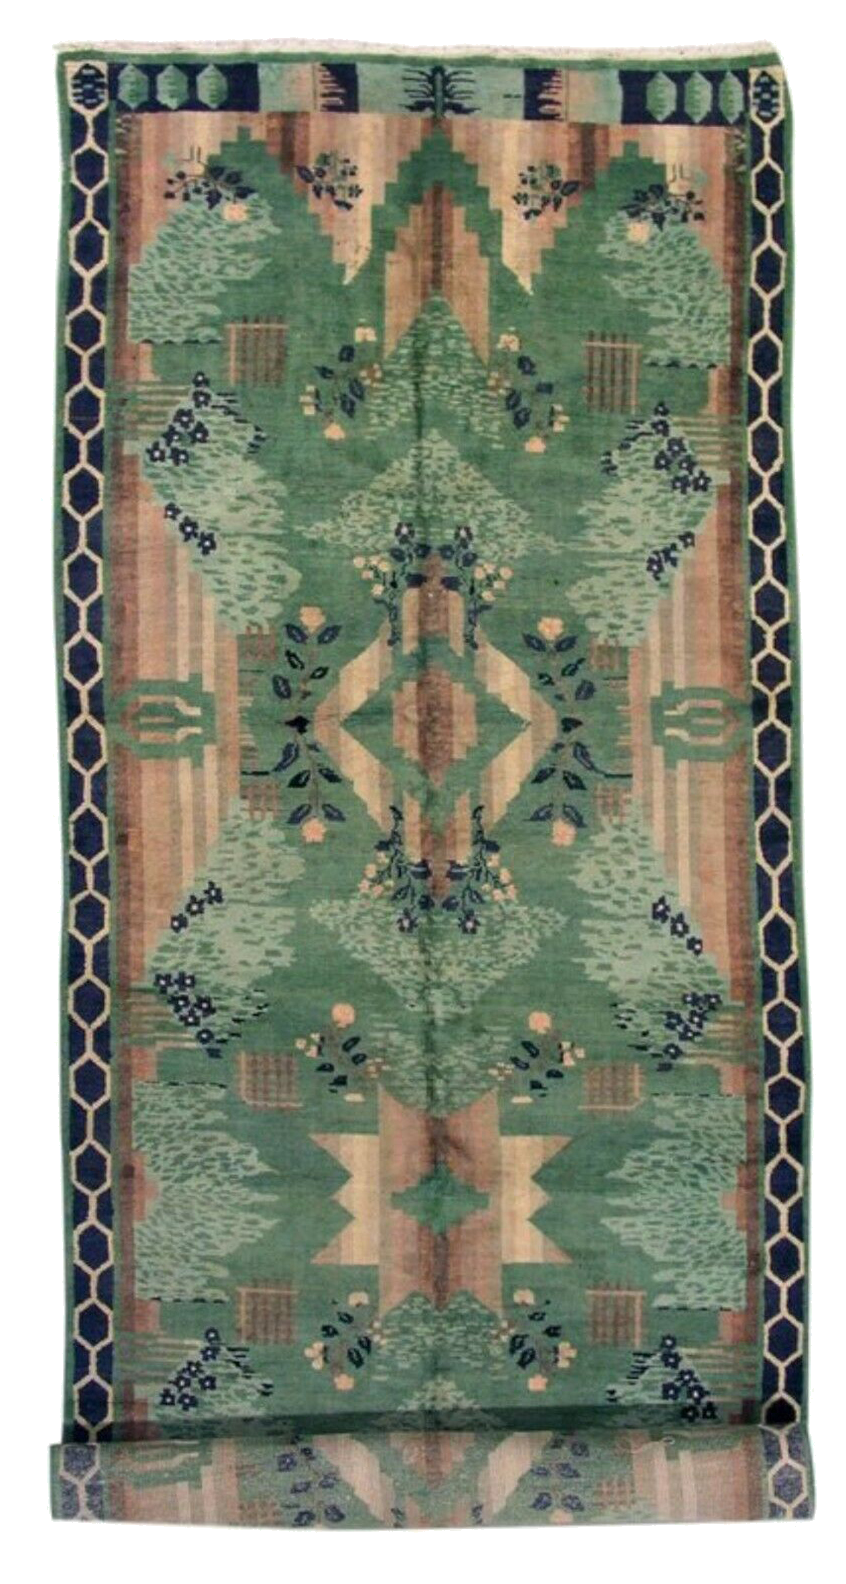 6X18 Green Antique European Art Deco Rug, circa 1920